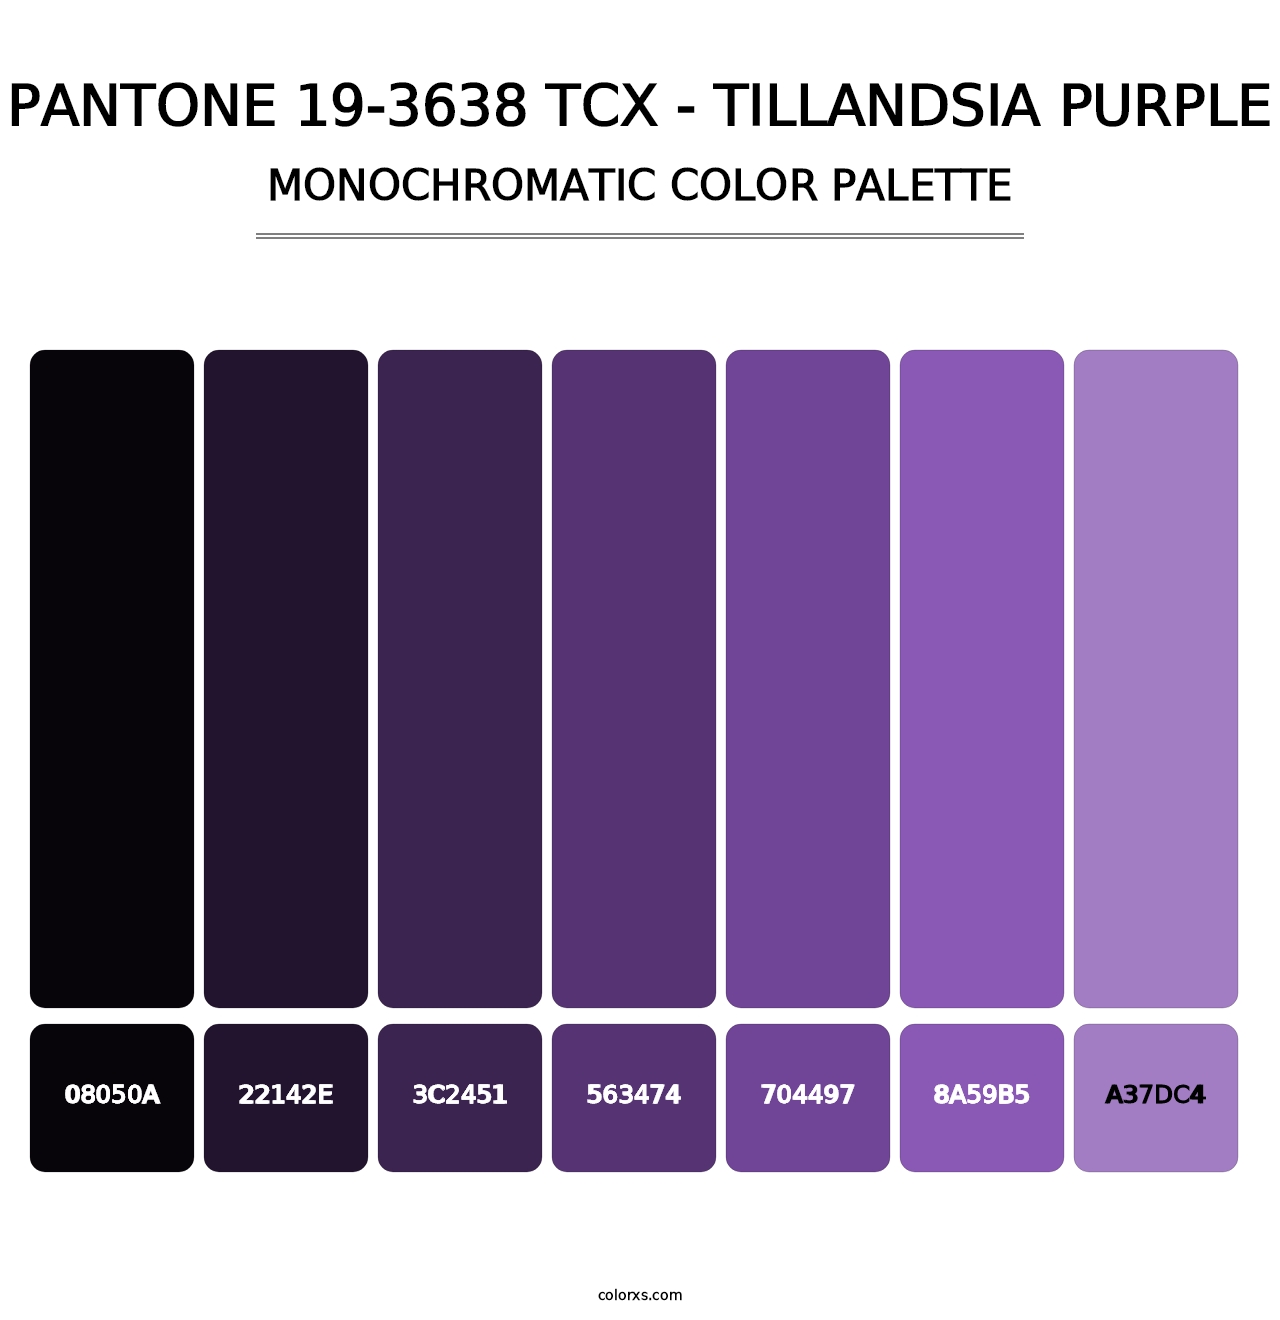 PANTONE 19-3638 TCX - Tillandsia Purple - Monochromatic Color Palette